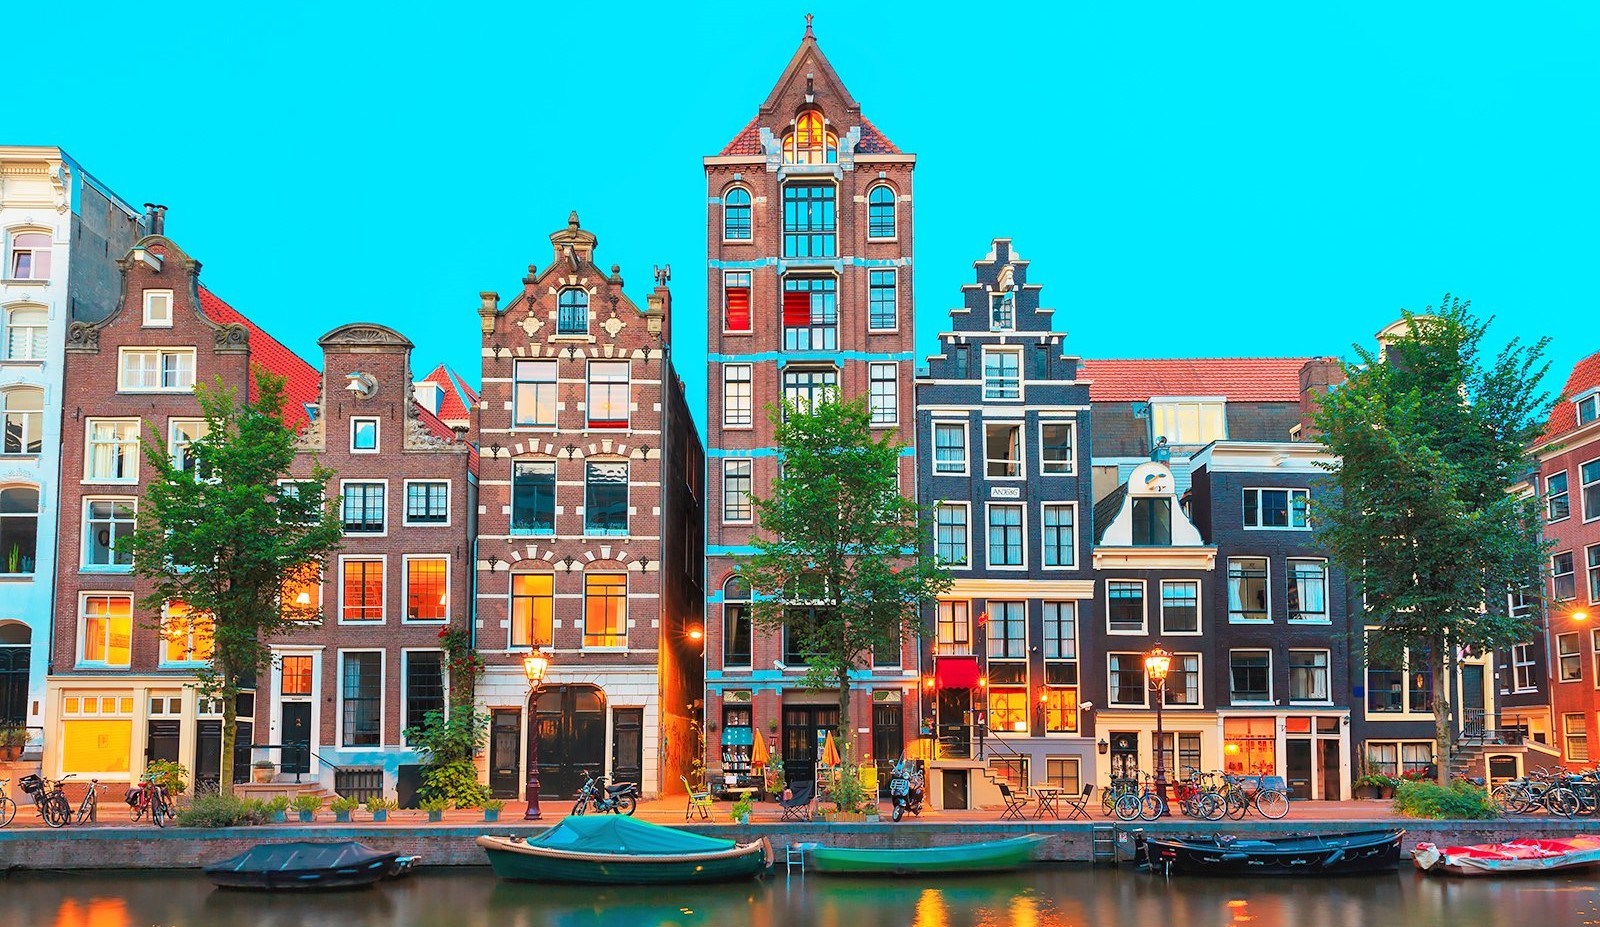 Donde jugar padel ¿en Amsterdam?